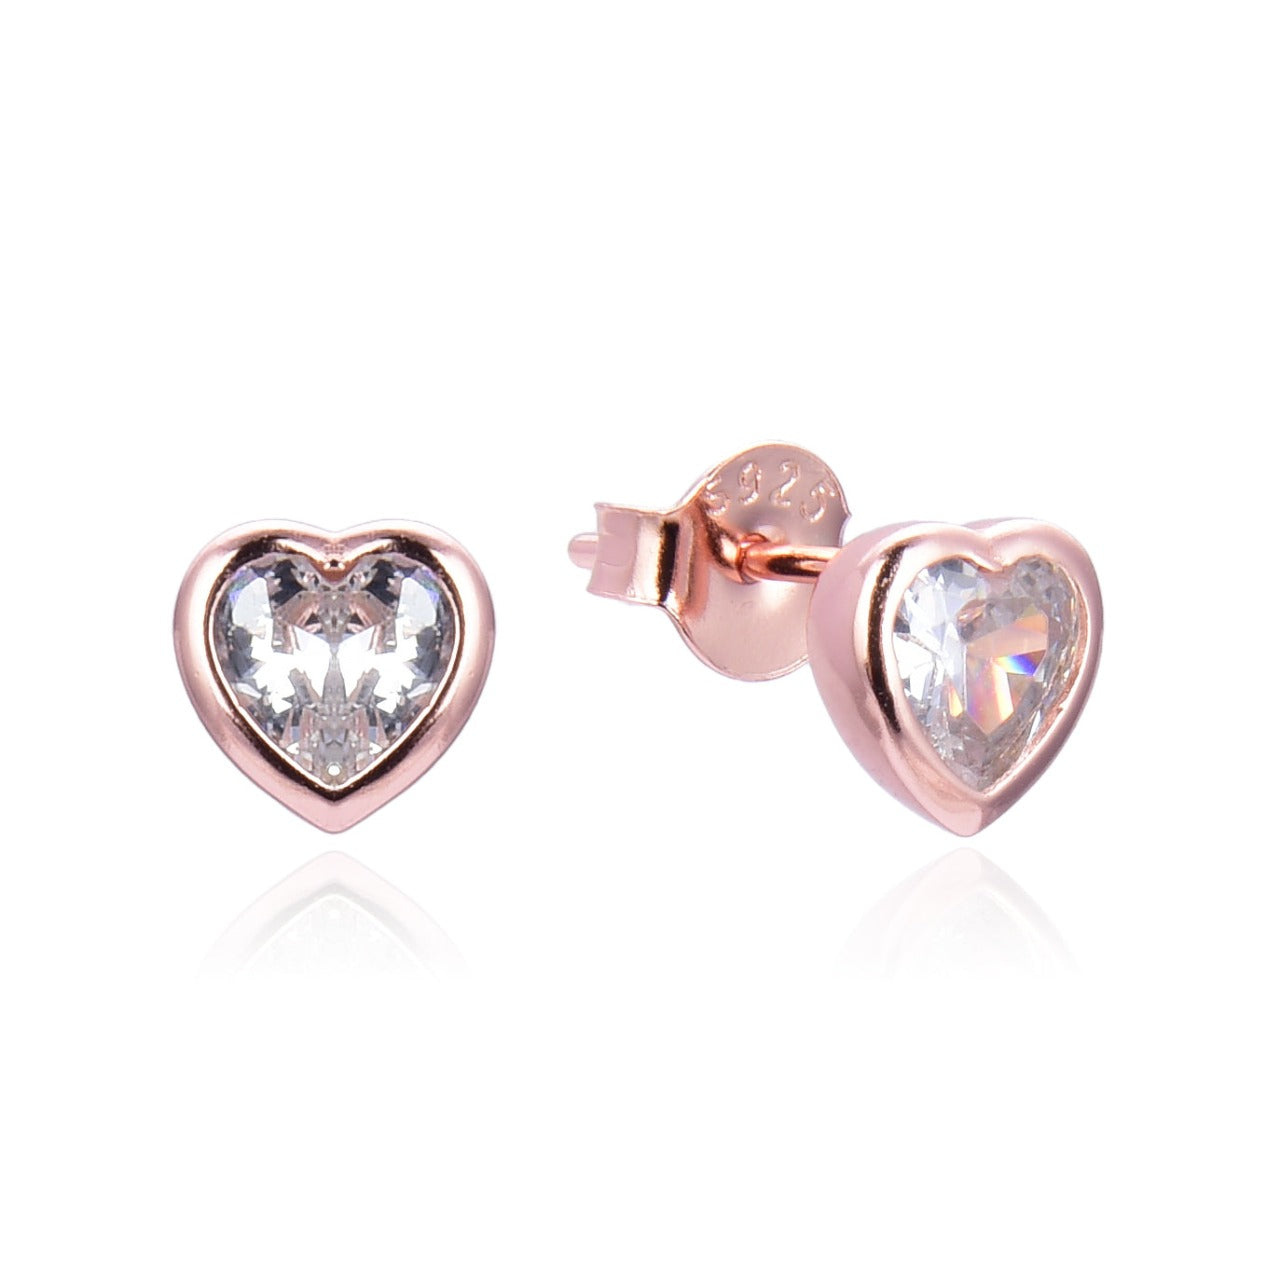 Rose Gold Love Heart Stud Earrings Kilkenny Silver     Rose gold plated sterling silver love heart stud earrings with cubic zirconia stones.